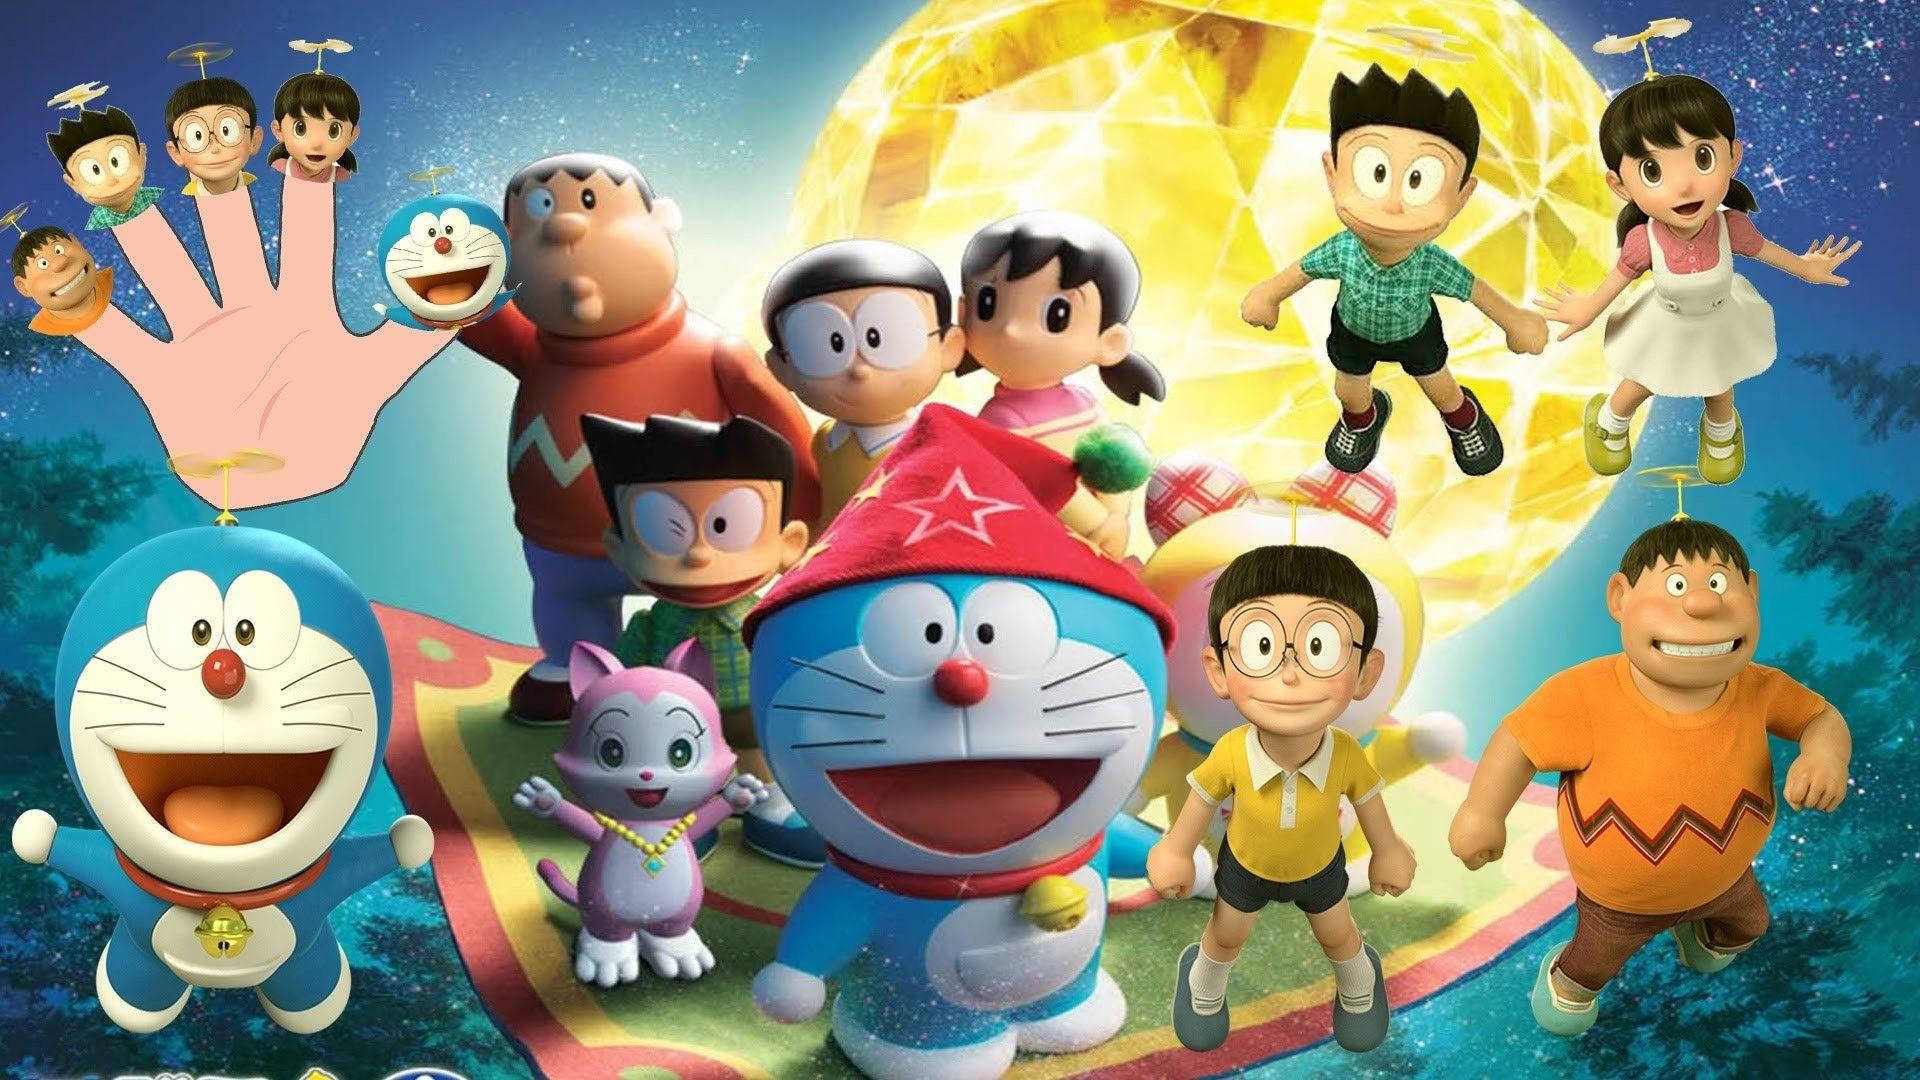 Papelde Parede De Doraemon 3d, O Pôster Do Filme. Papel de Parede